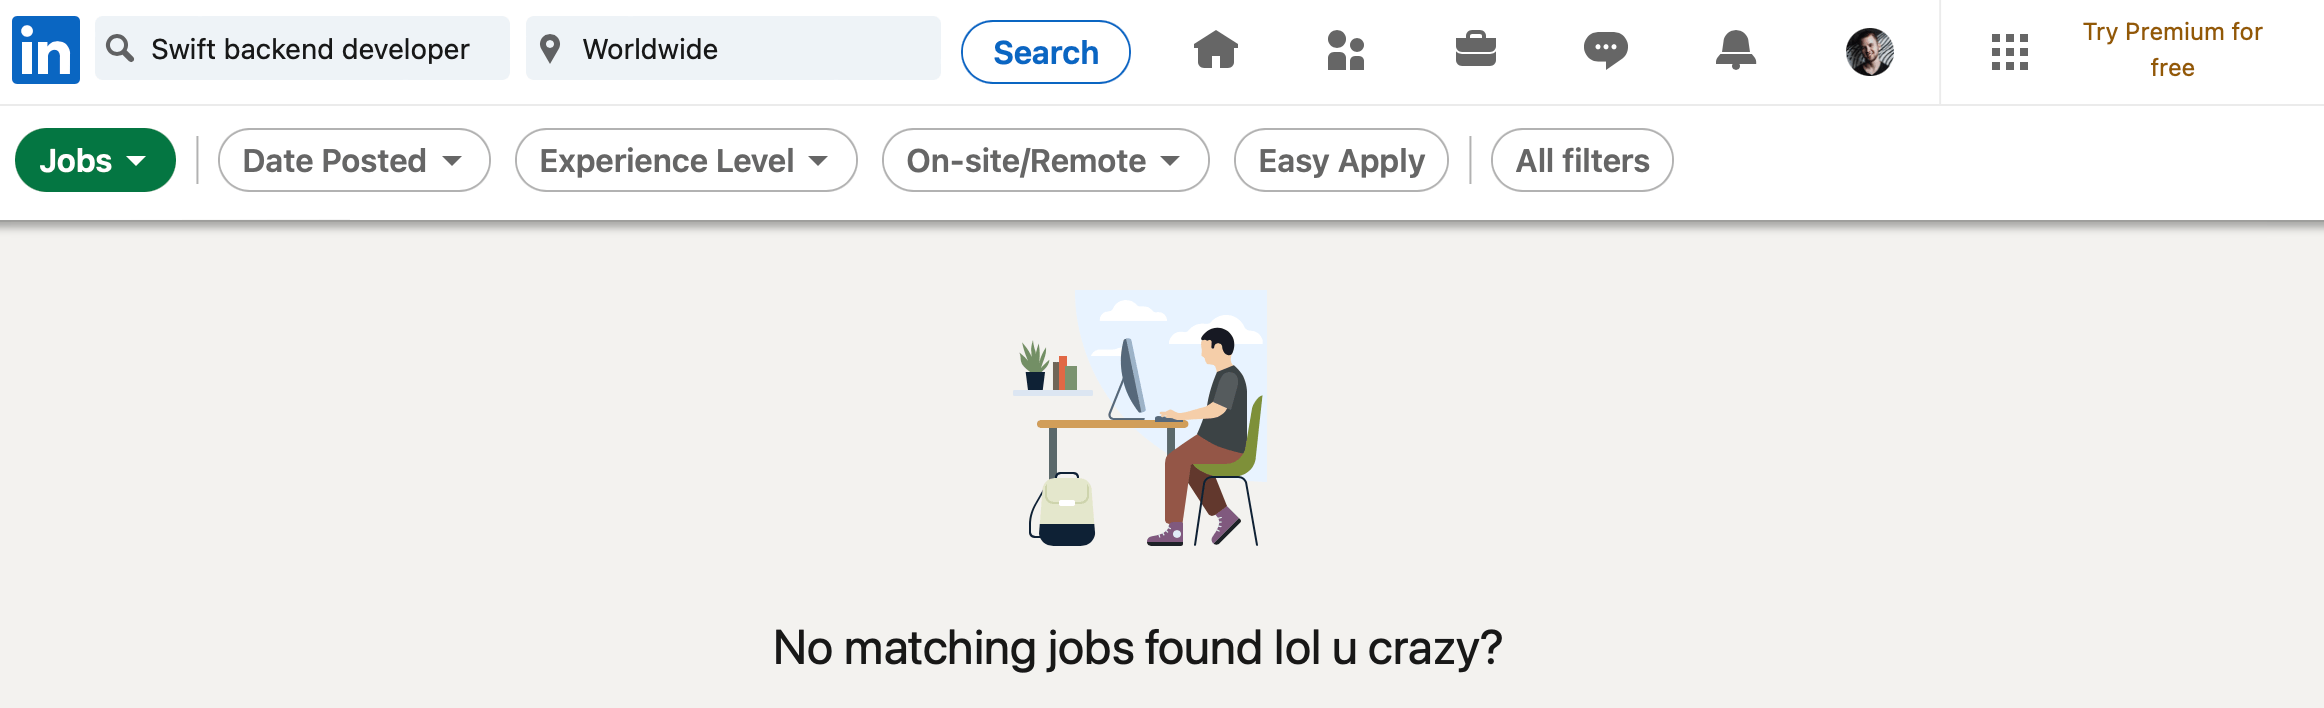 Good luck finding a developer